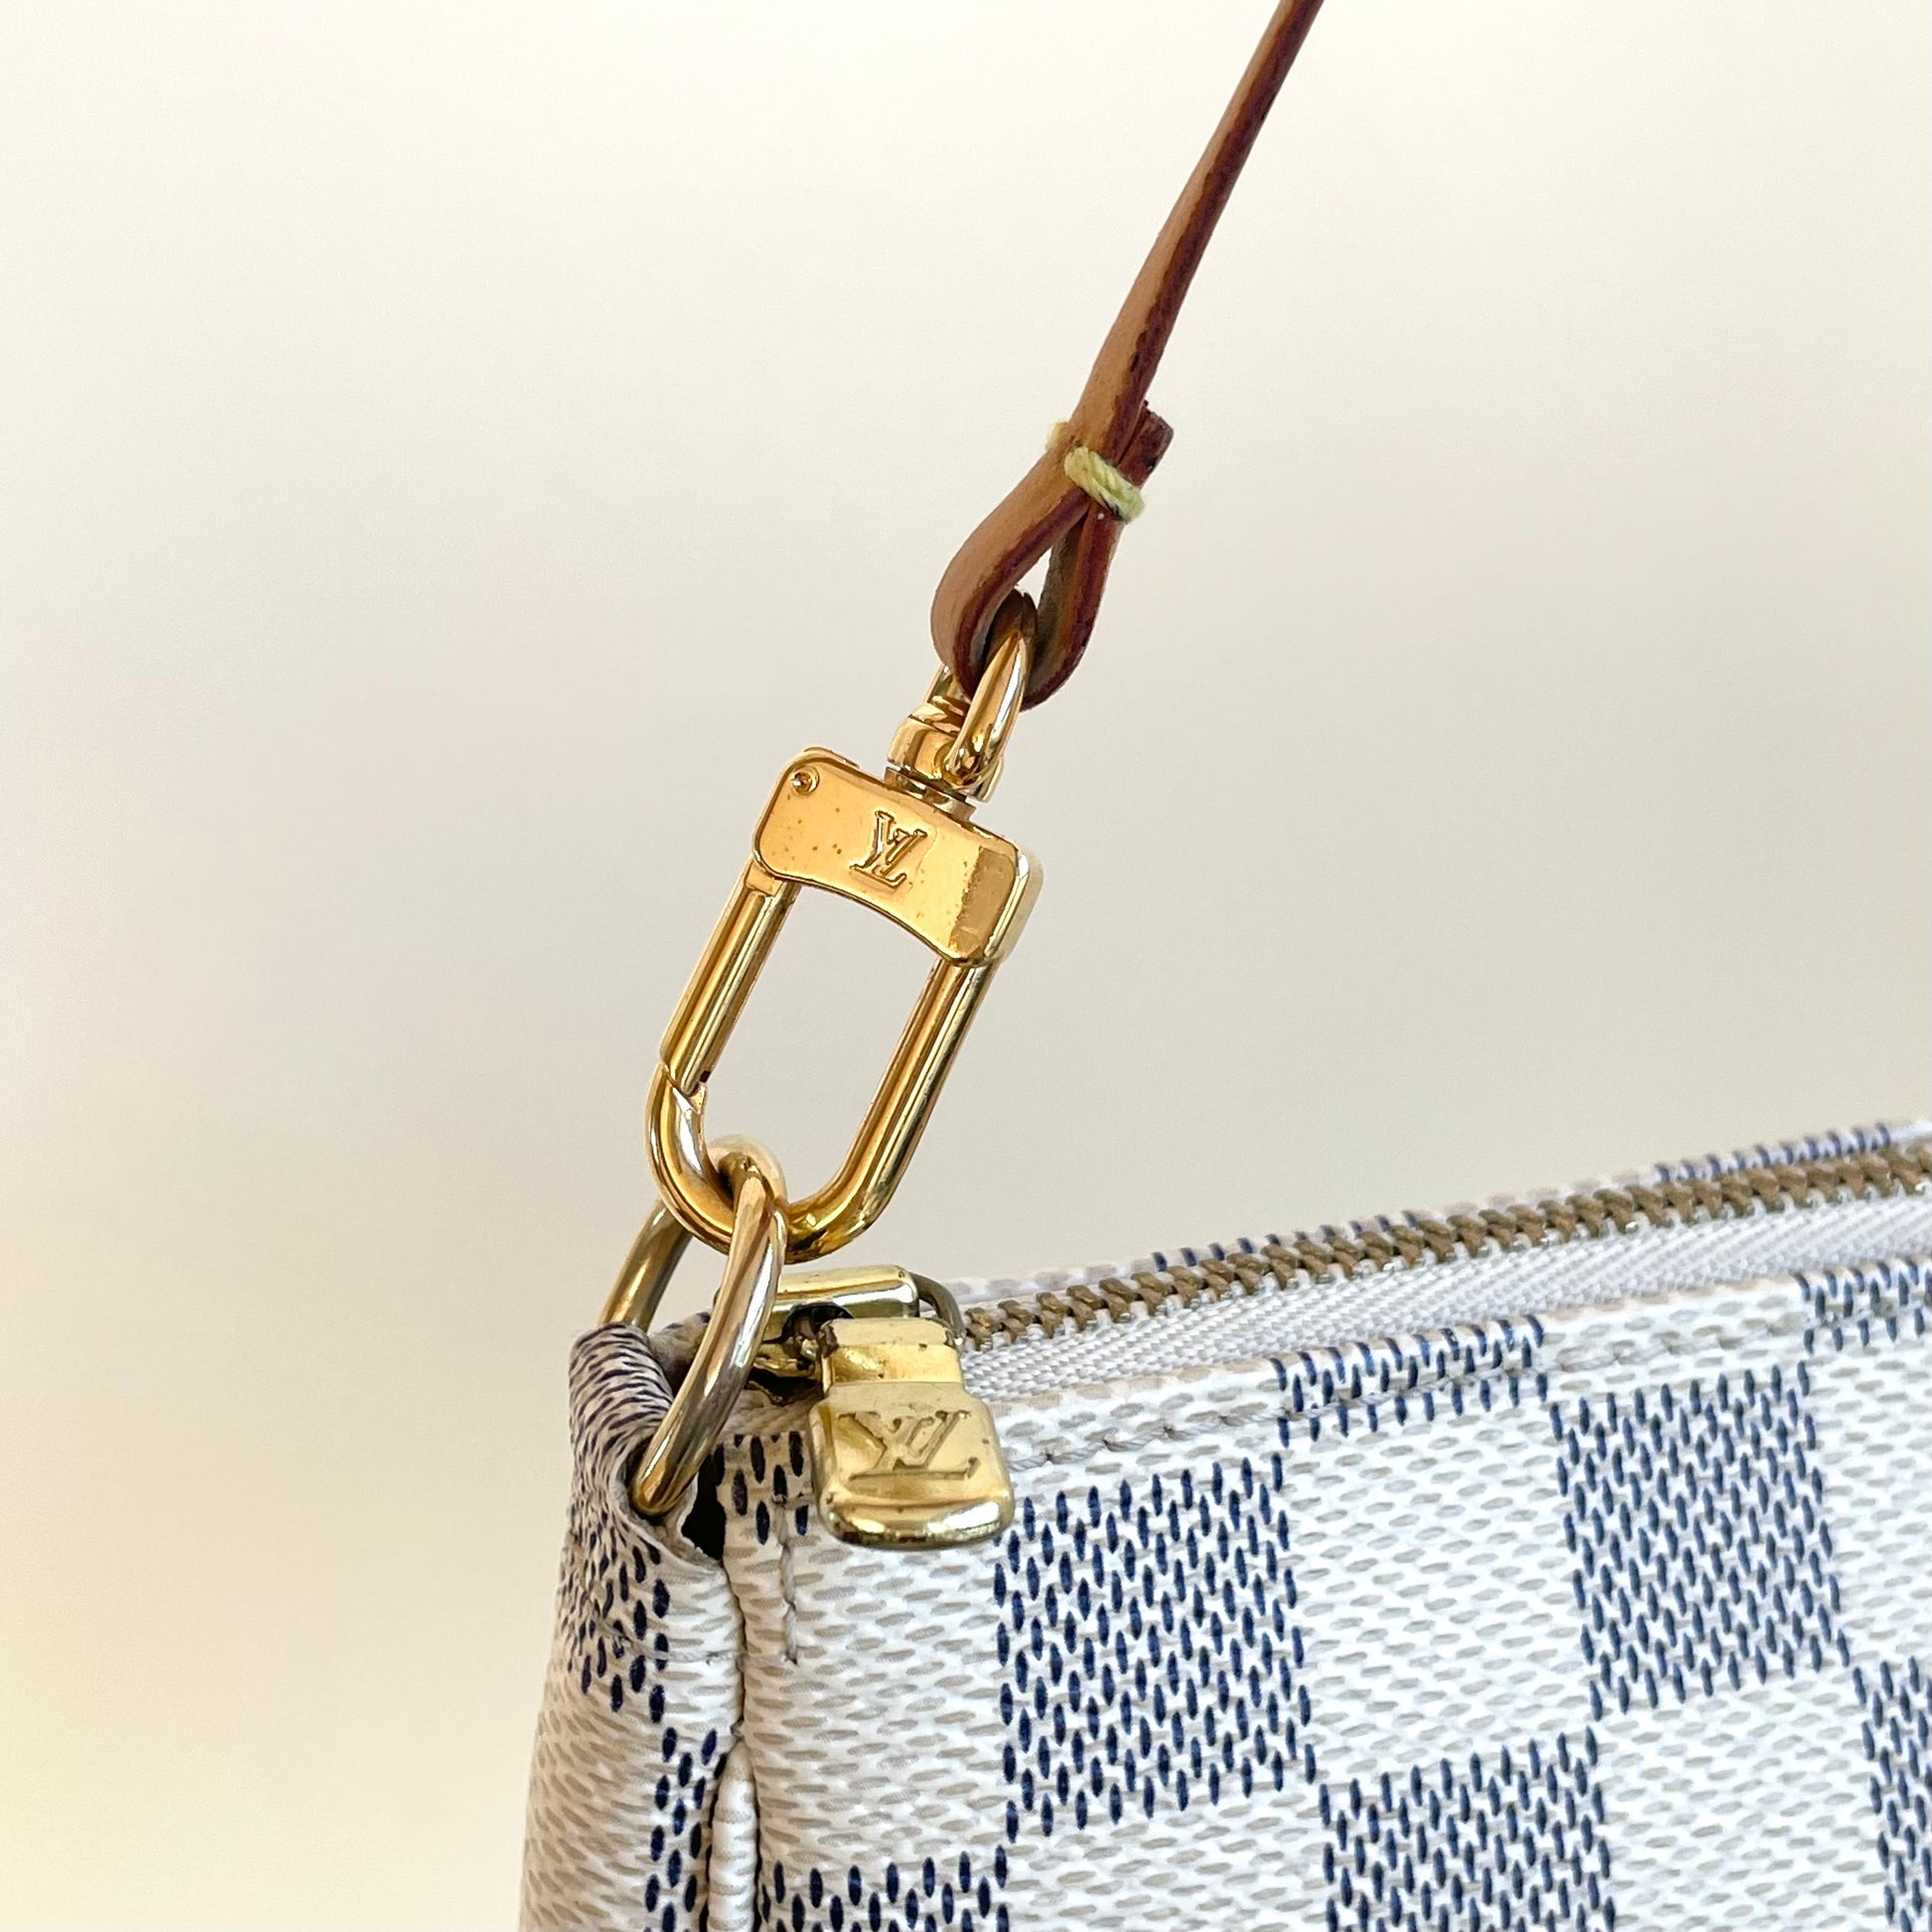 Louis Vuitton Pochette Accessories Damier Azur White